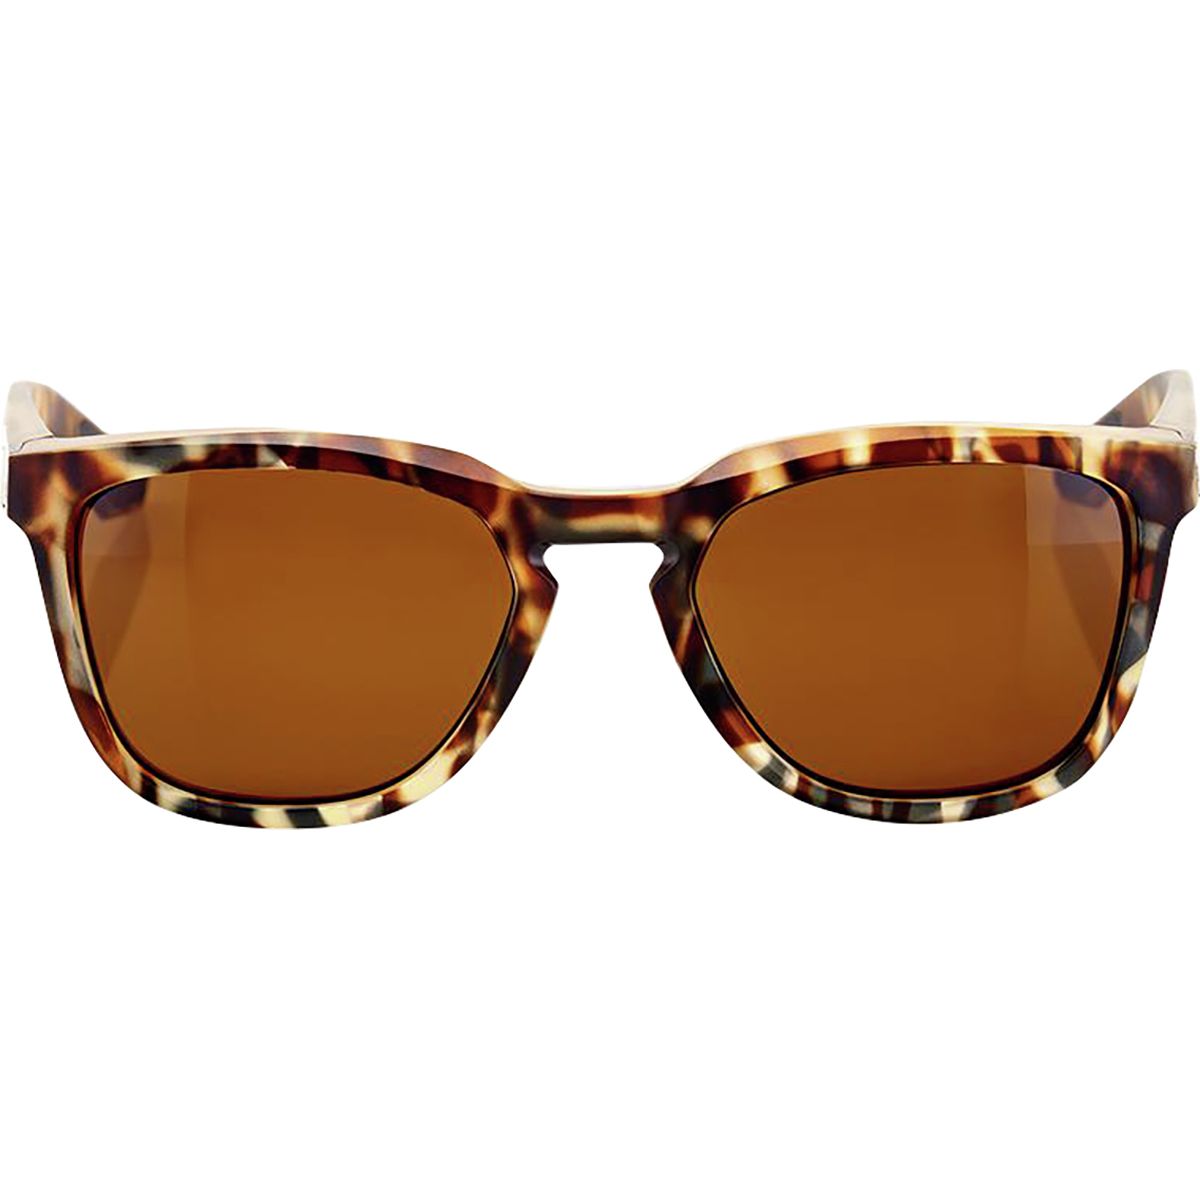 100% Hudson Sunglasses | Backcountry.com